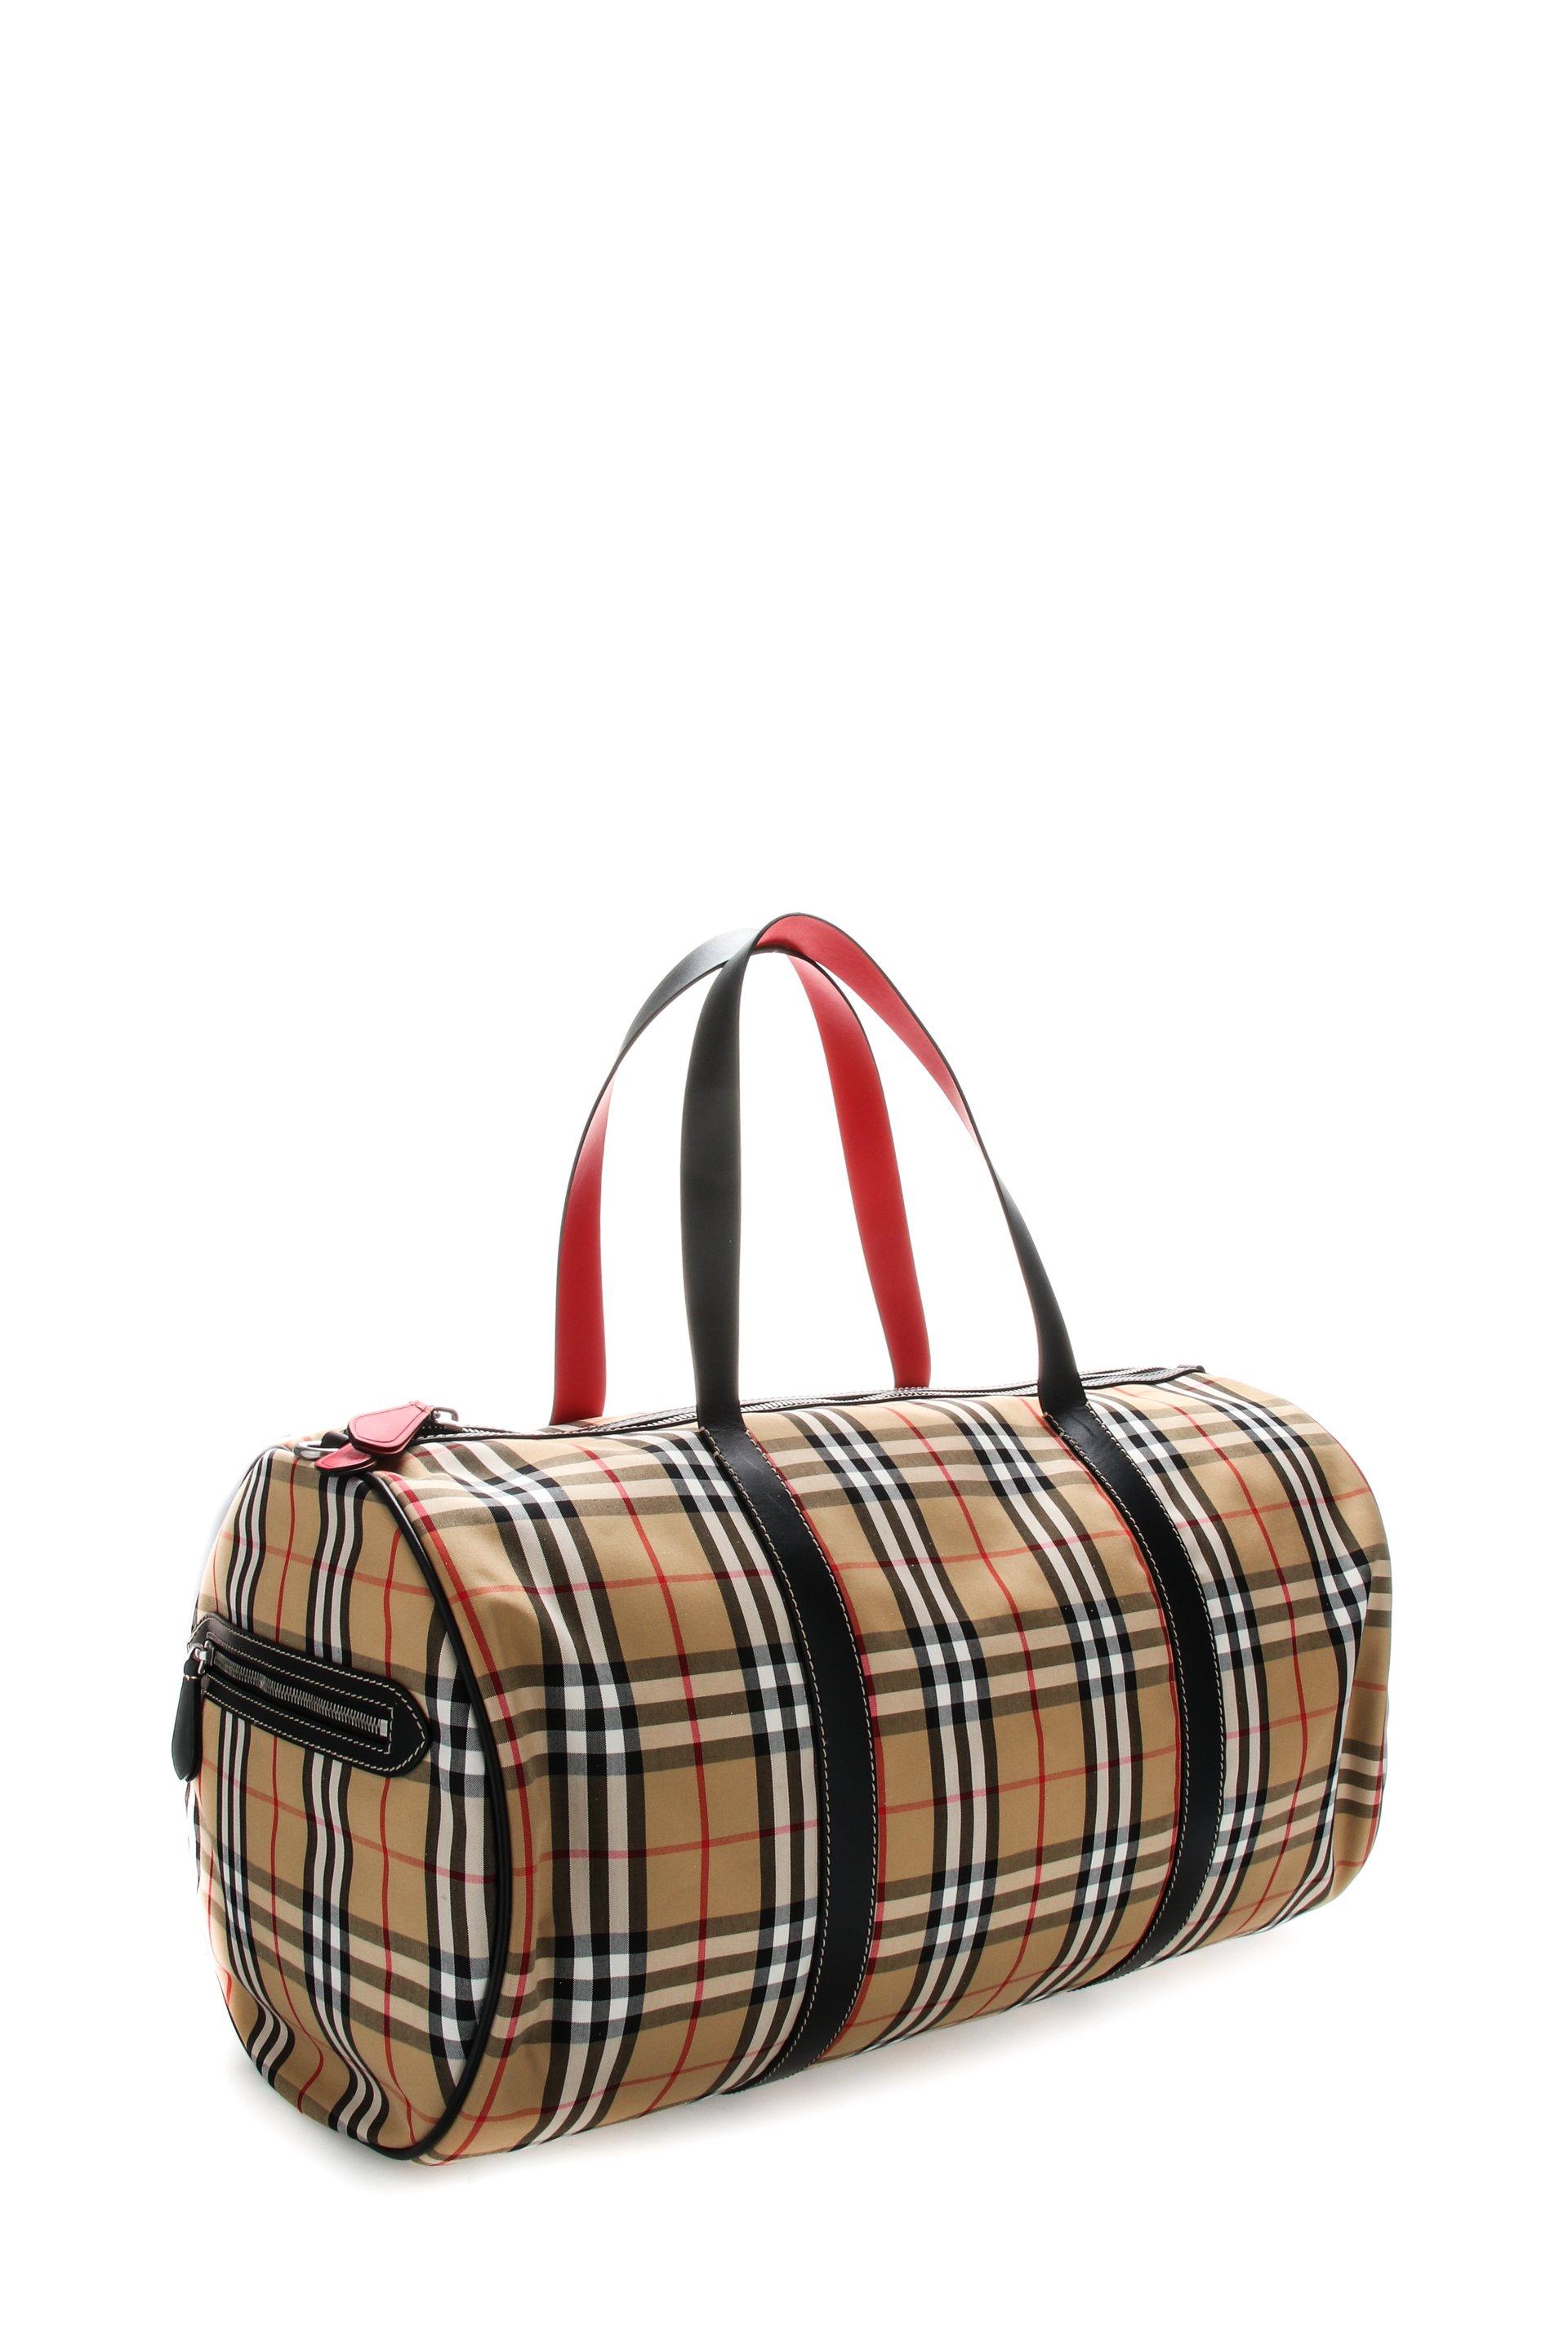 Burberry Leather Large Vintage Check Barrel Bag for Men - Lyst